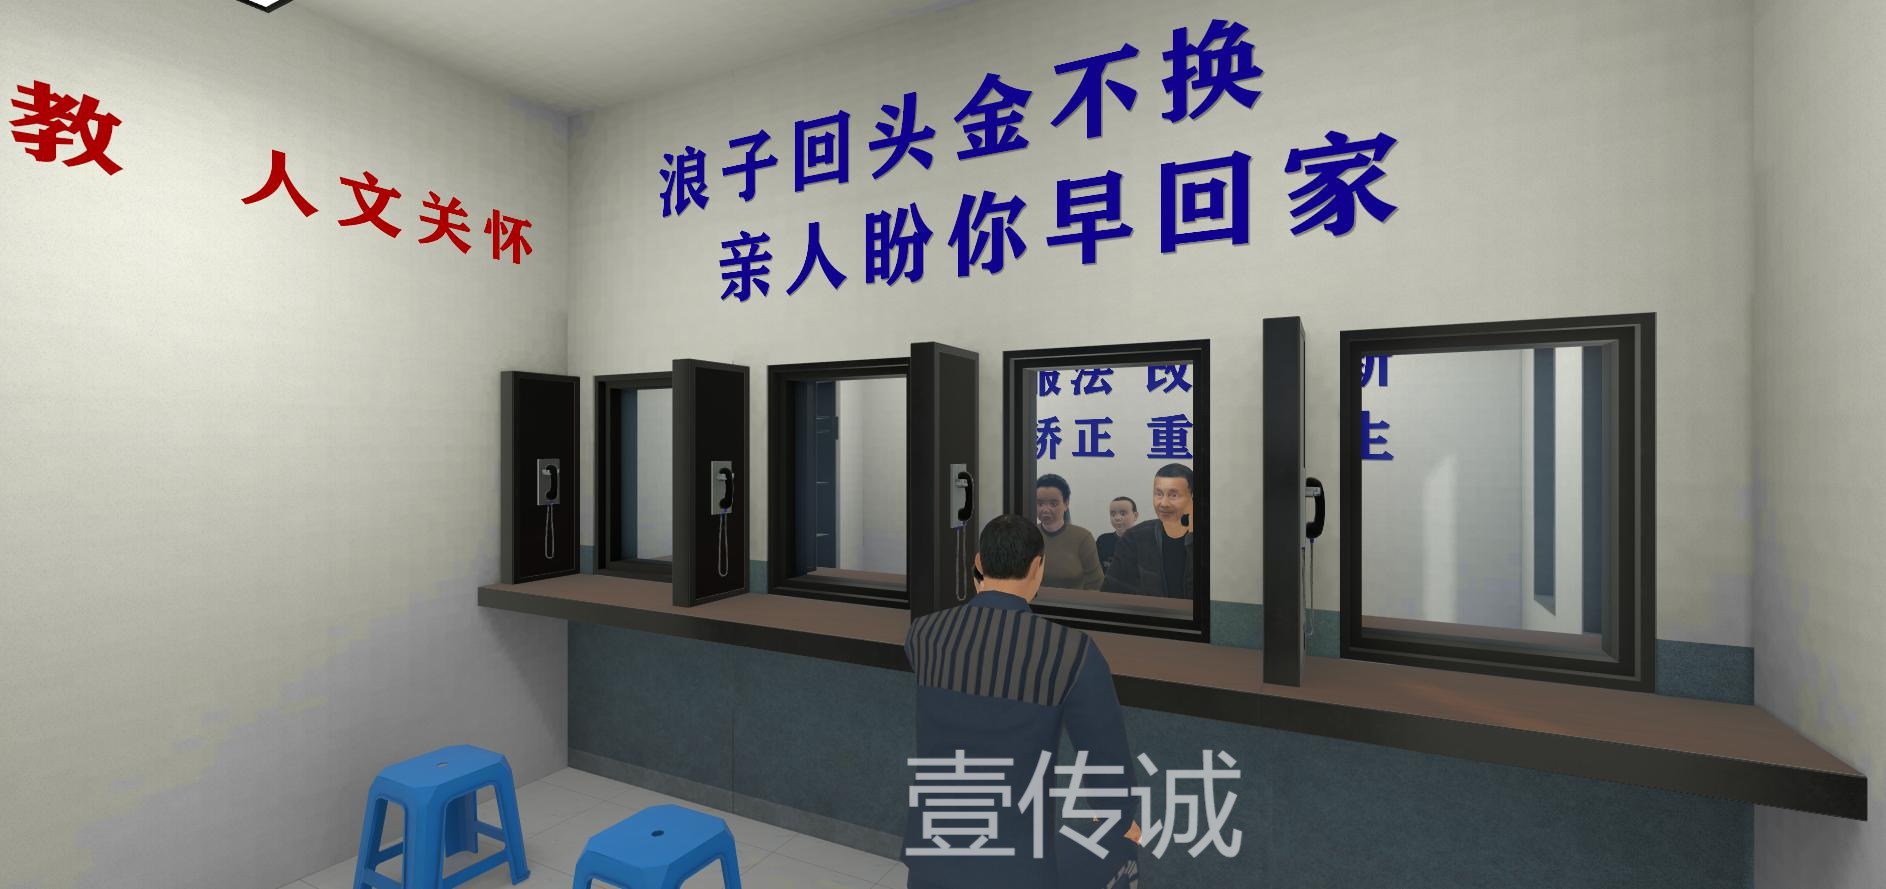 VR模拟监狱生活